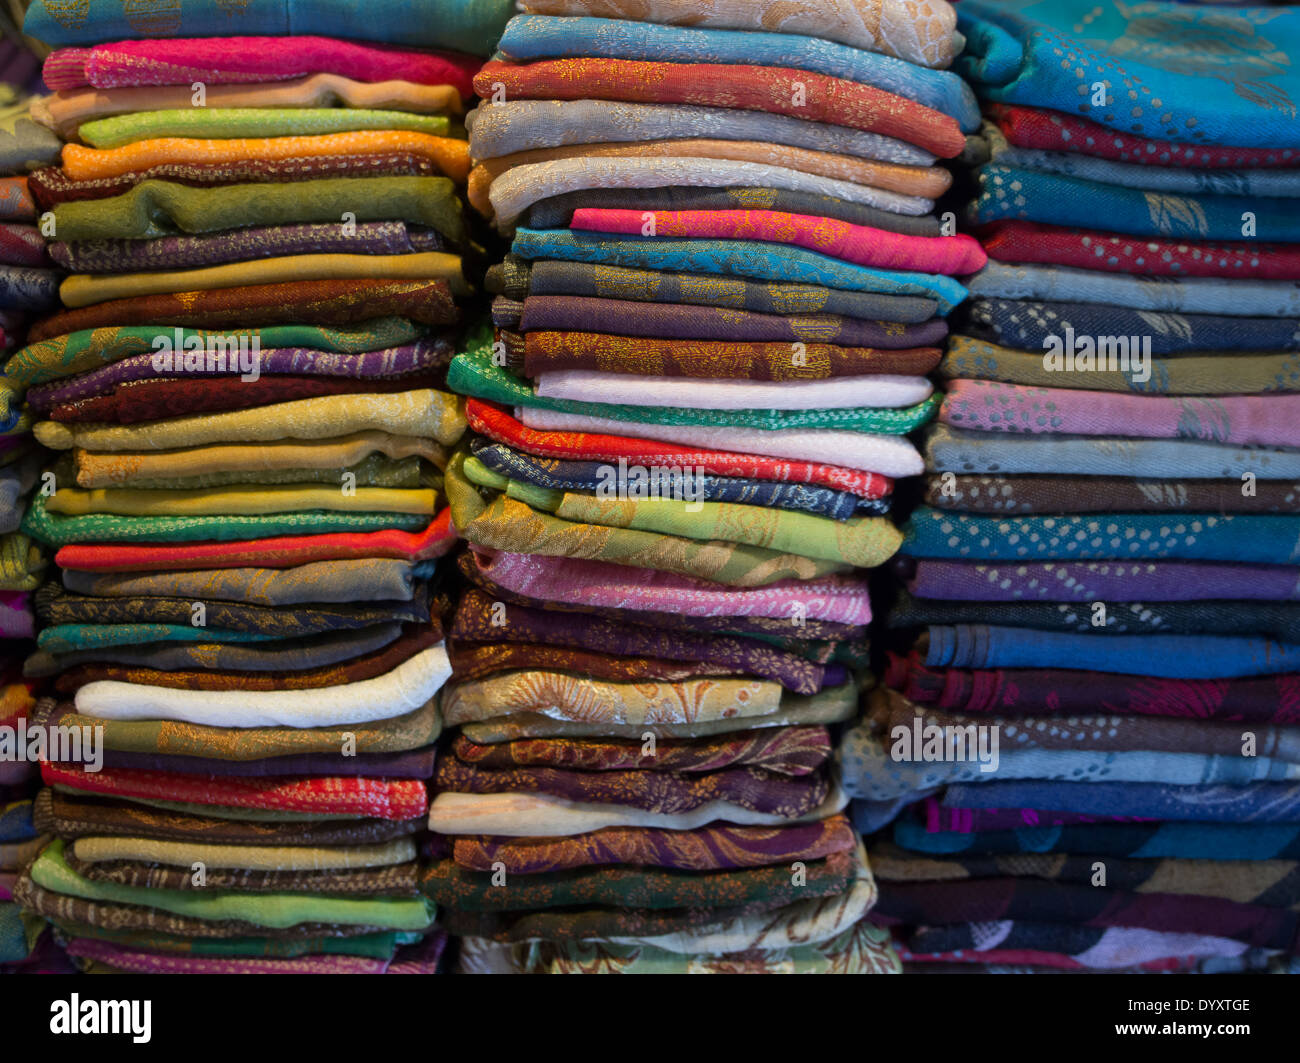 Vêtements et tissus pour la vente au marché nocturne d'Angkor, Siem Reap, Cambodge Banque D'Images